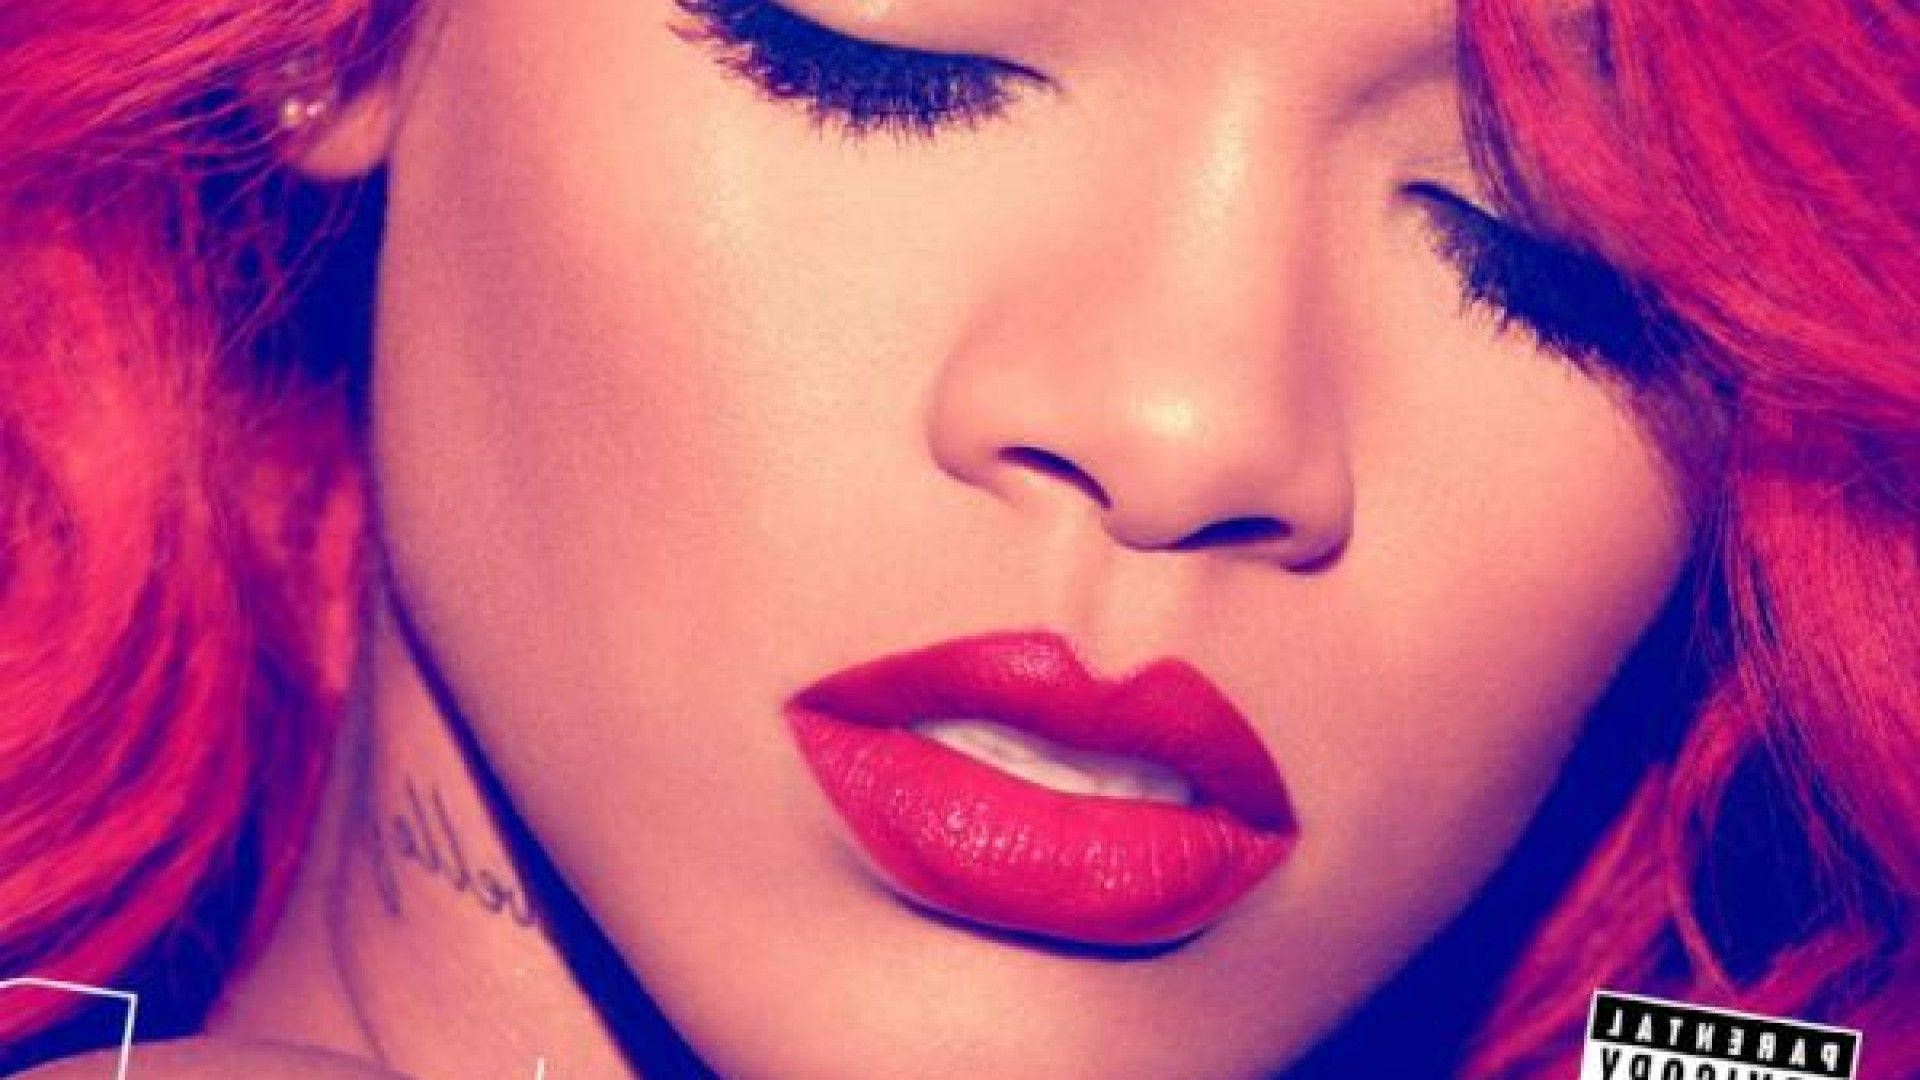 The cover of Rihanna's album 